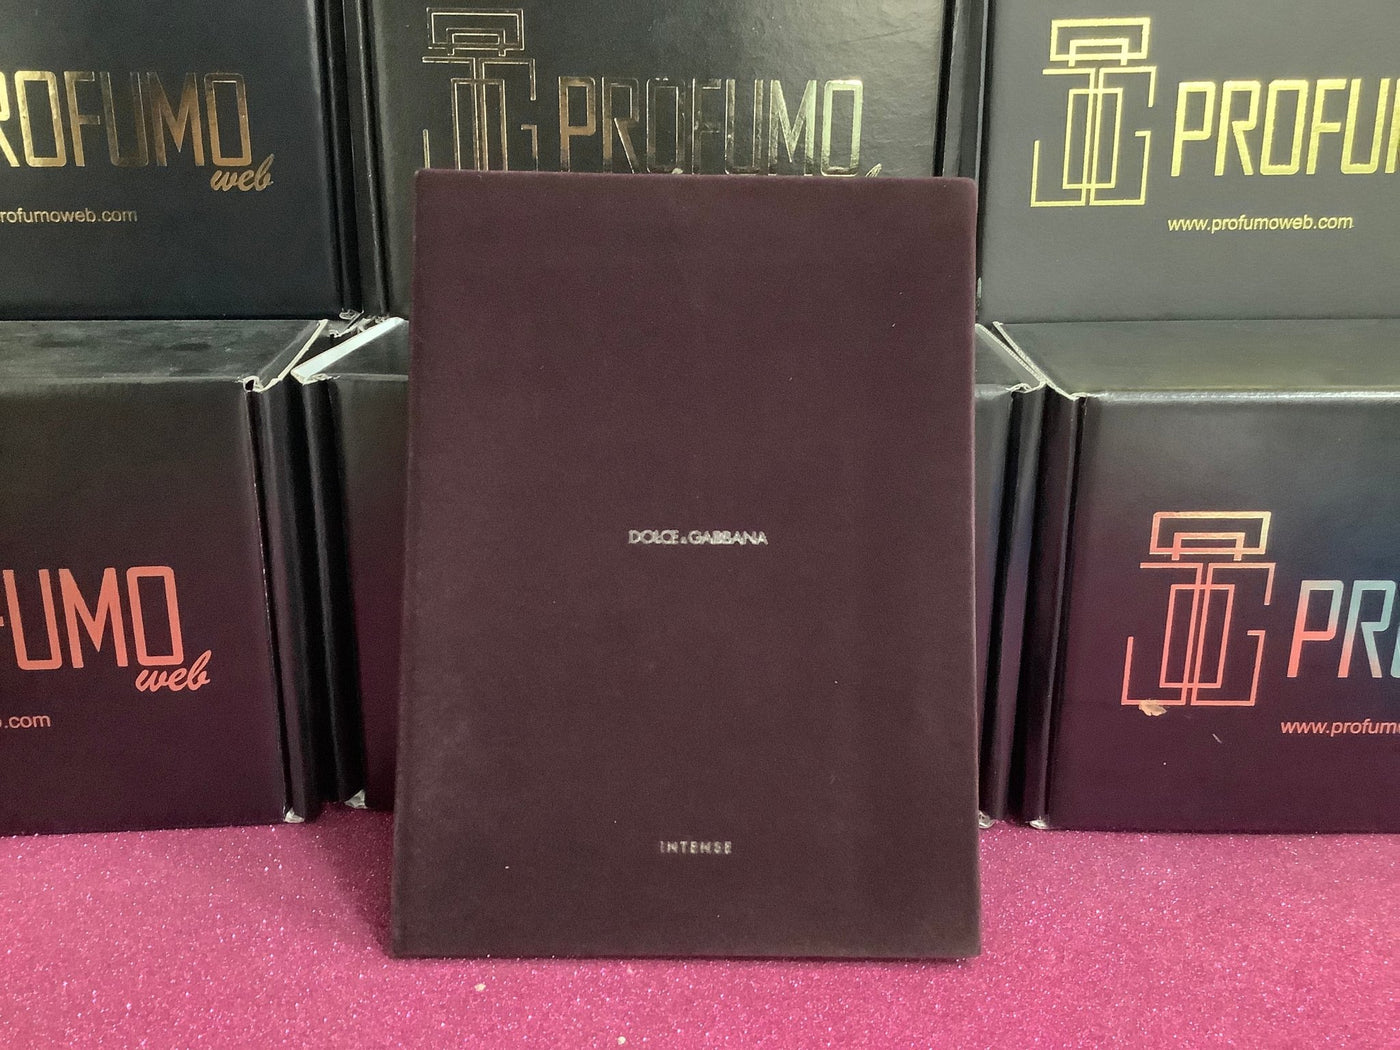 Notebook Dolce e Gabbana in Velluto - Profumo Web